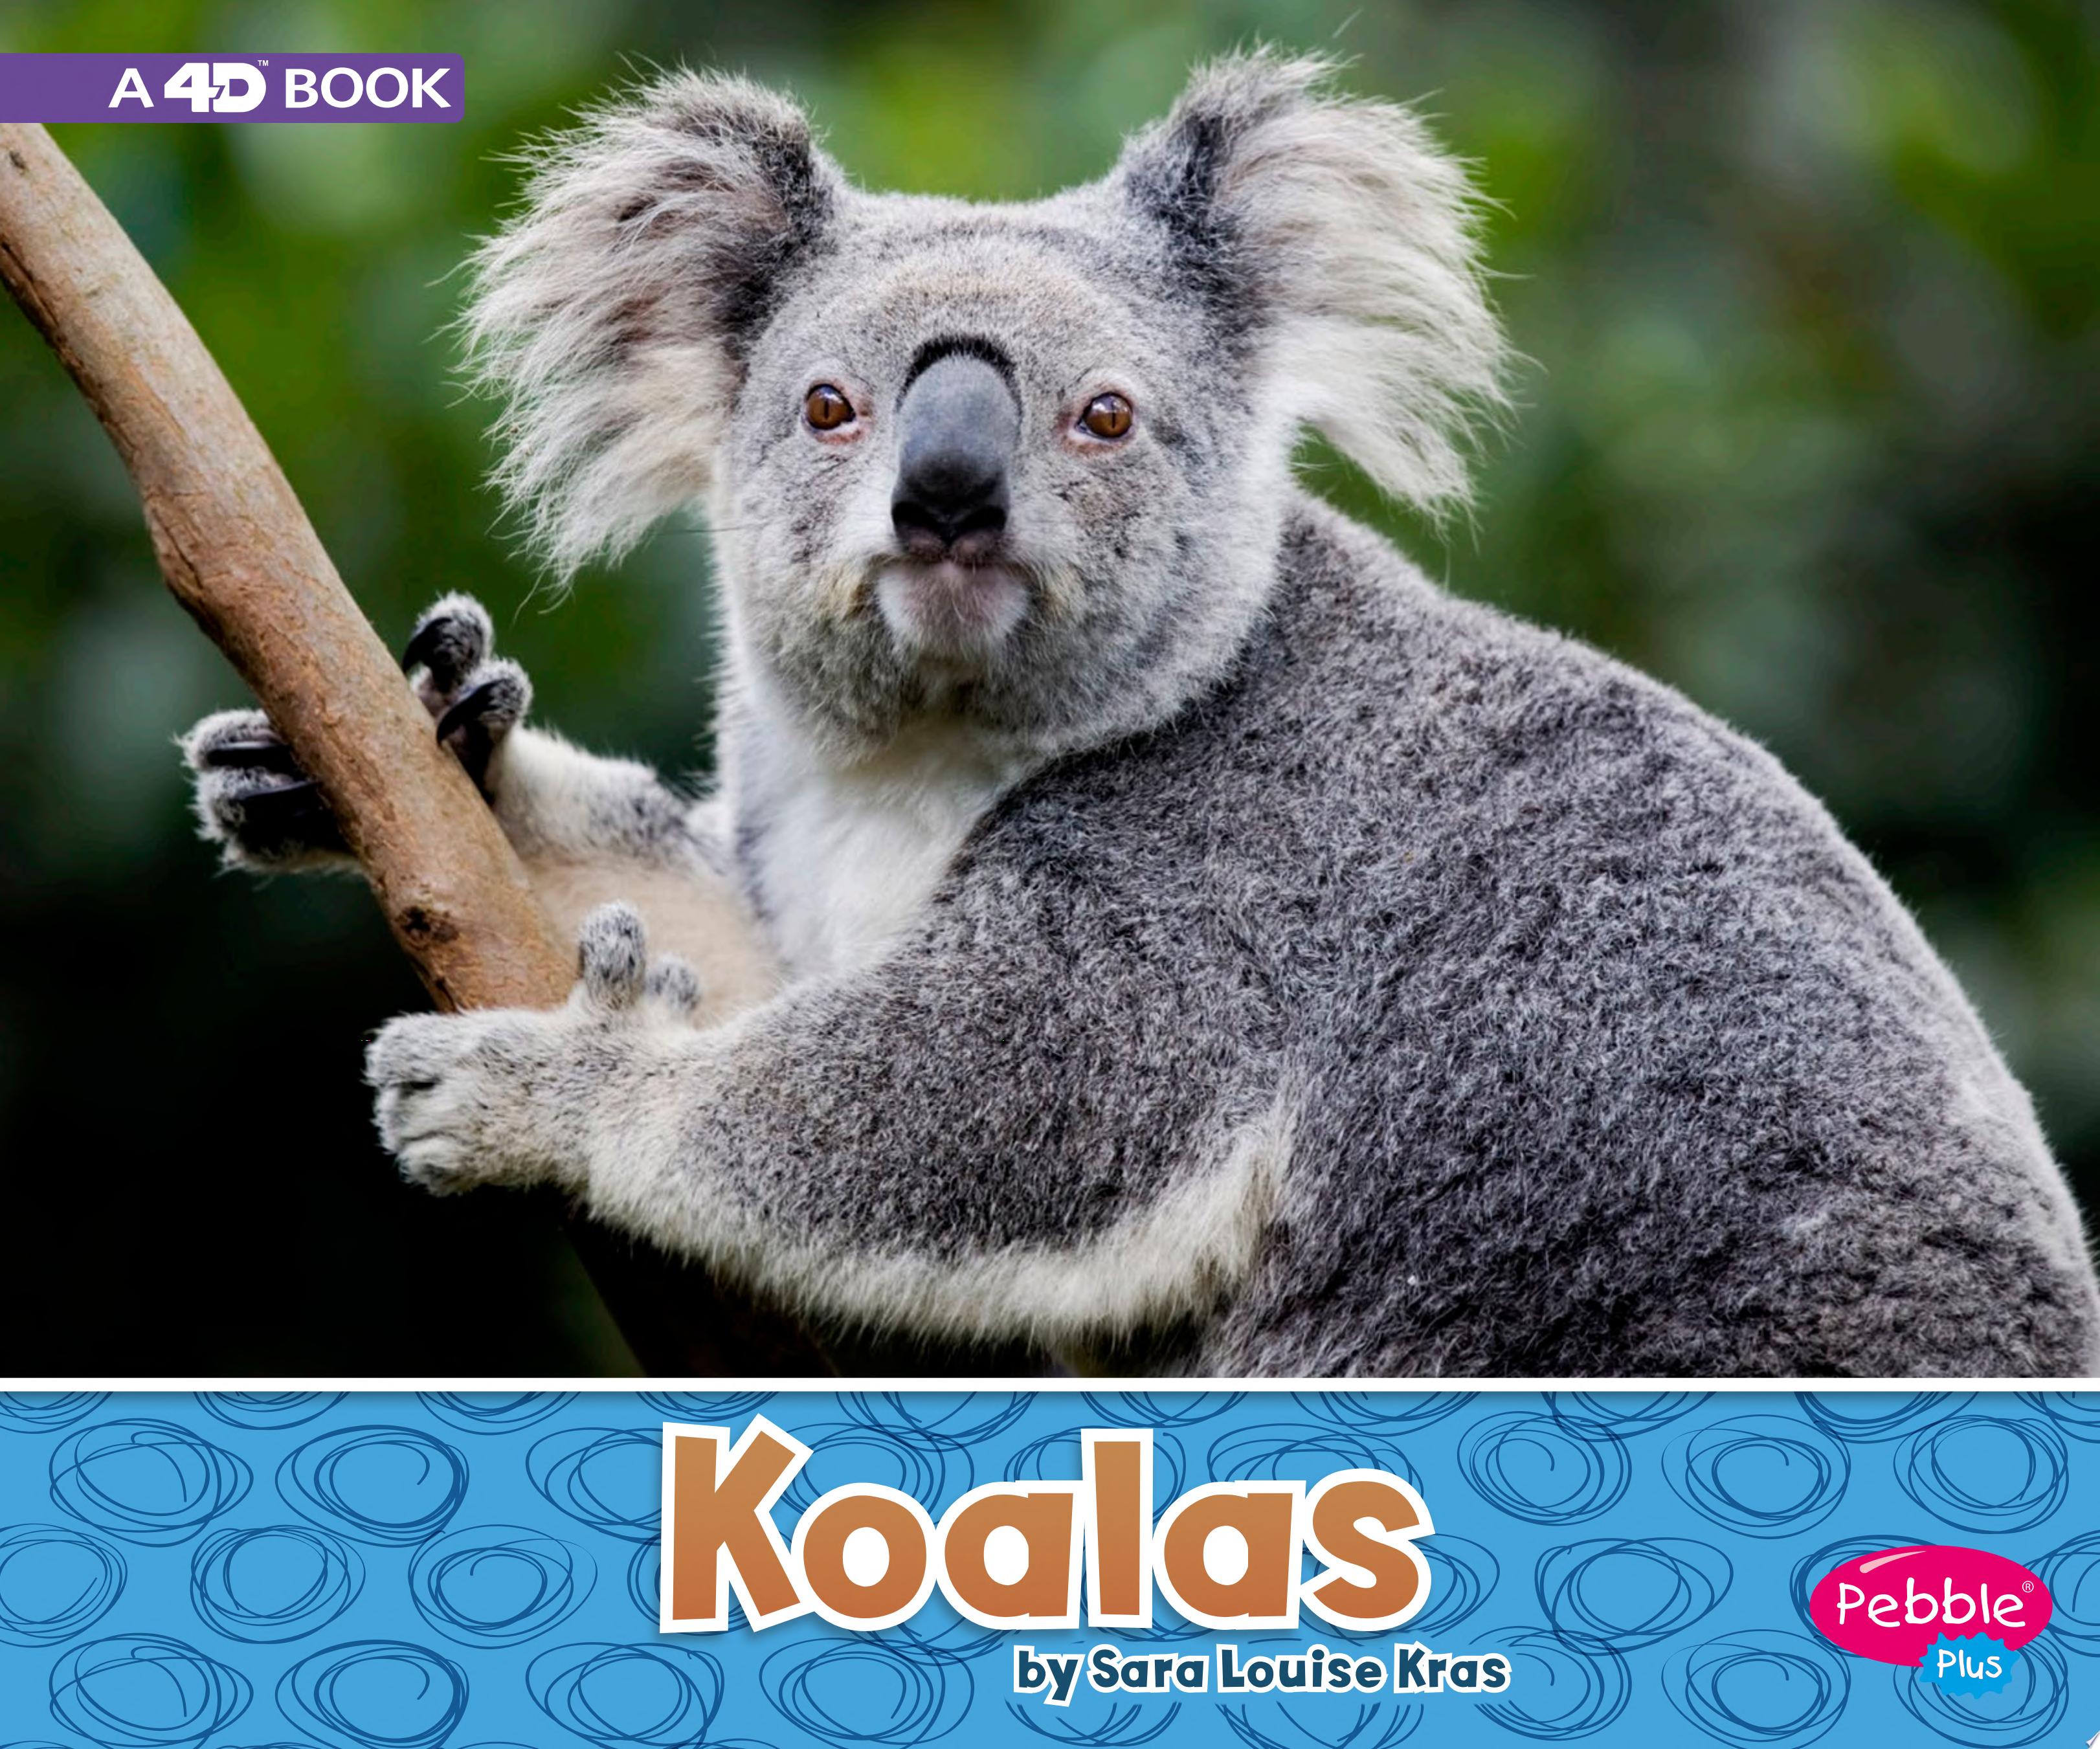 Image for "Koalas"